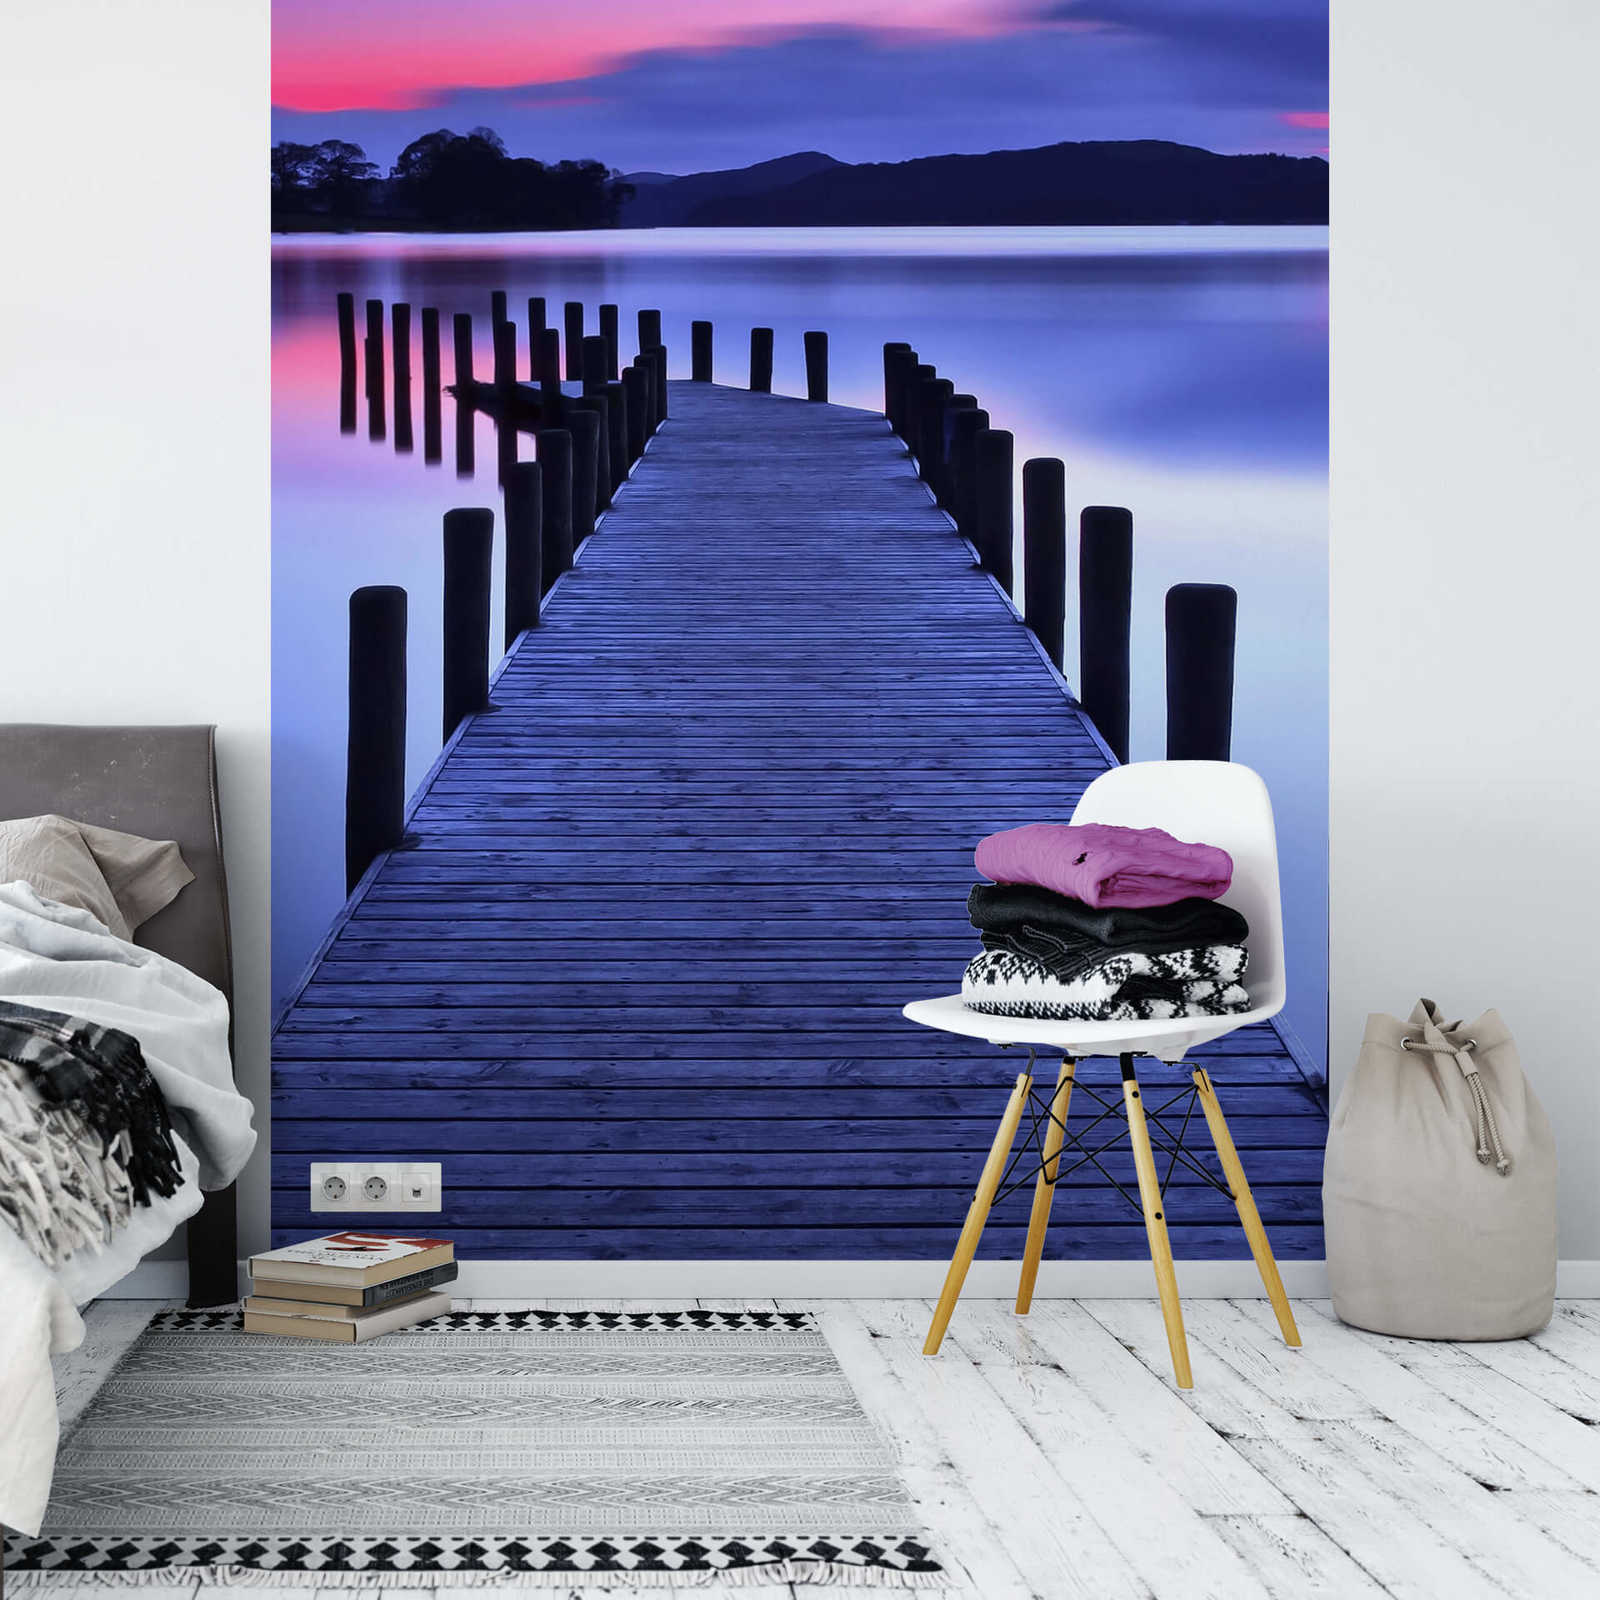             Papel pintado estrecho con puente en el lago - púrpura, rosa
        